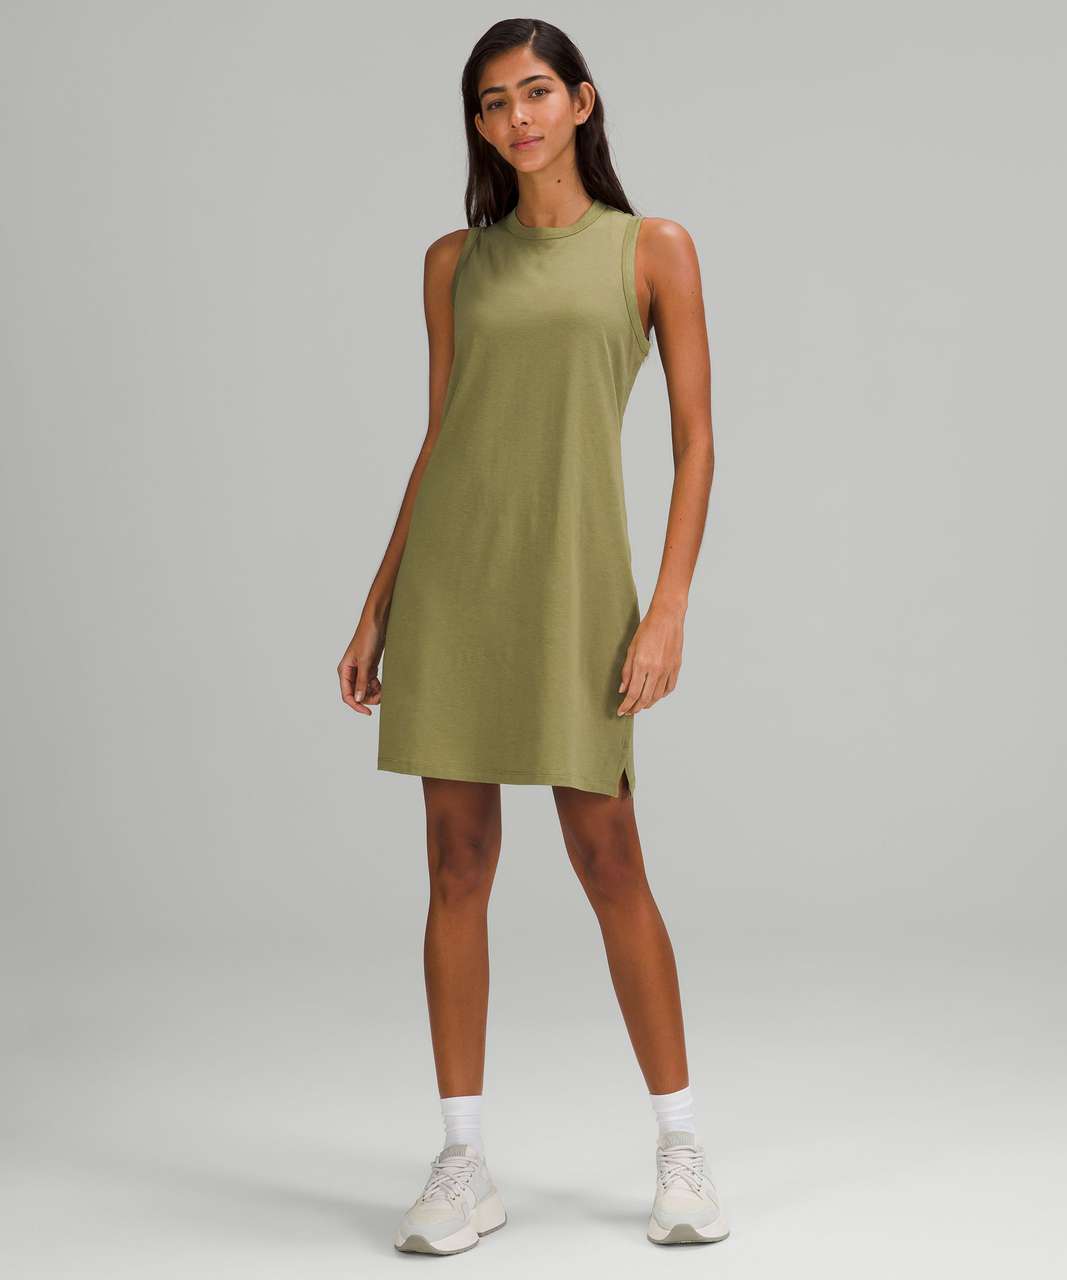 Lululemon Classic-Fit Cotton-Blend Dress - Bronze Green